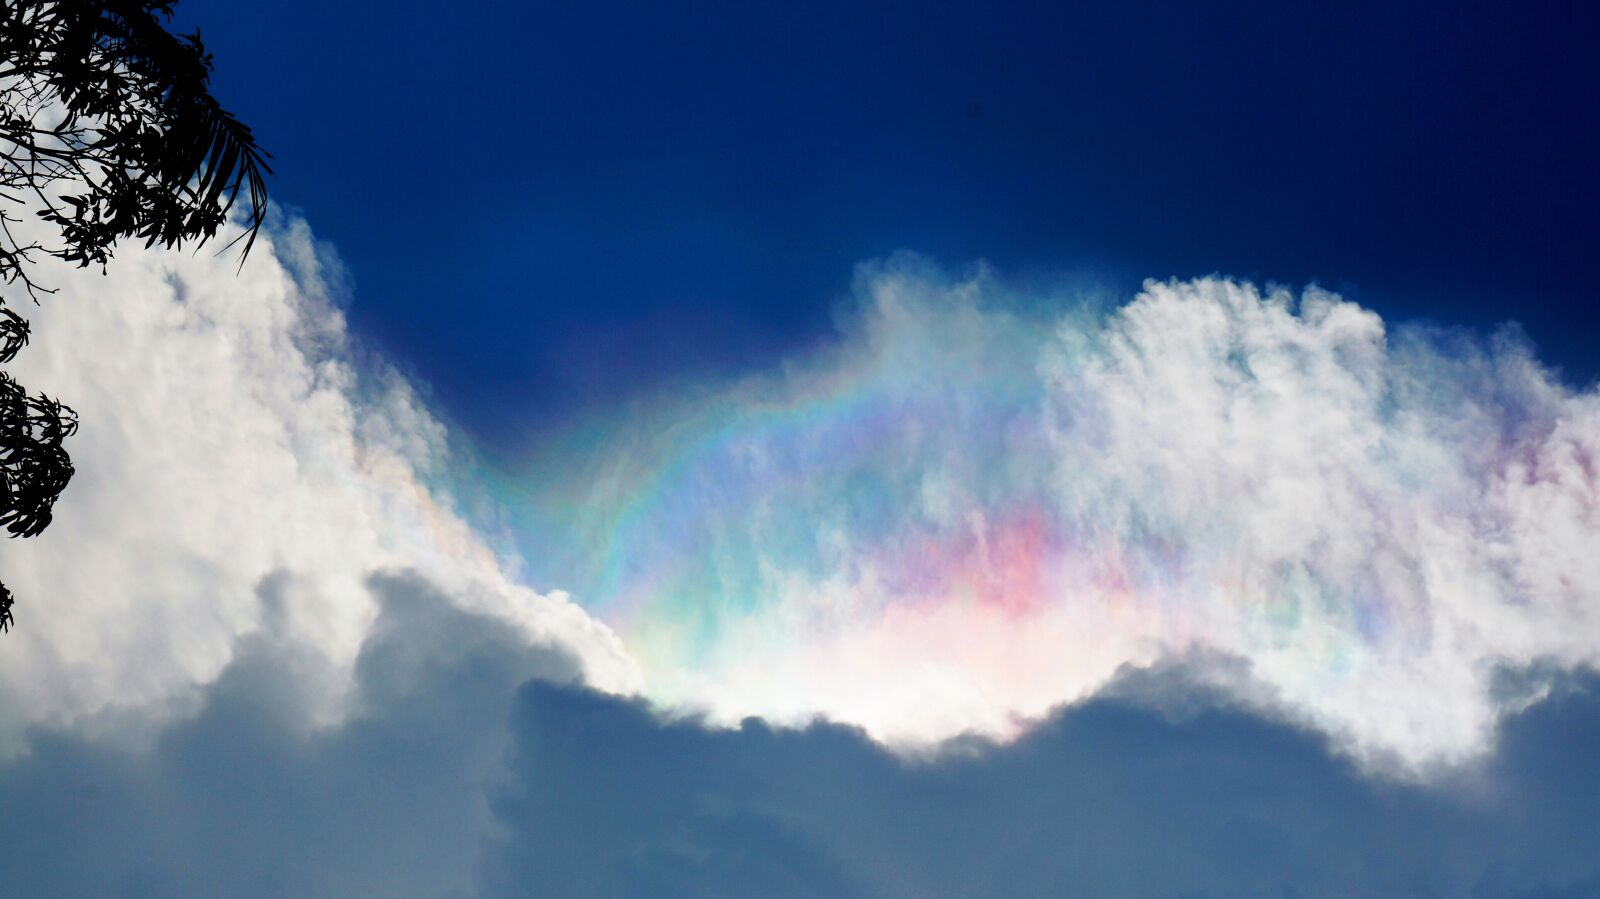 Sony Alpha a3000 sample photo. Sky, rainbow, clouds photography